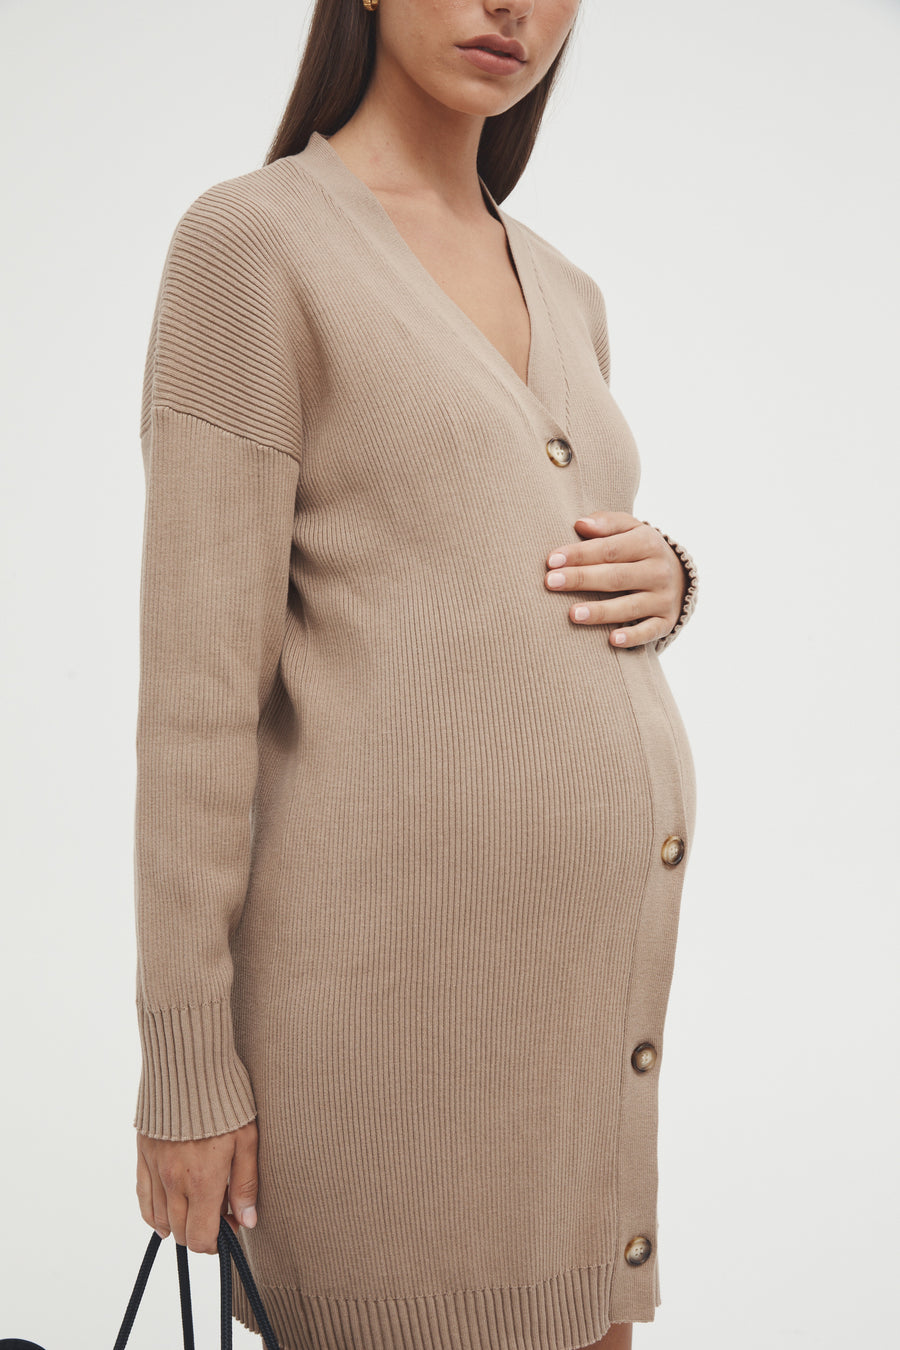 Maternity Cardigan Dress (Tan) 3